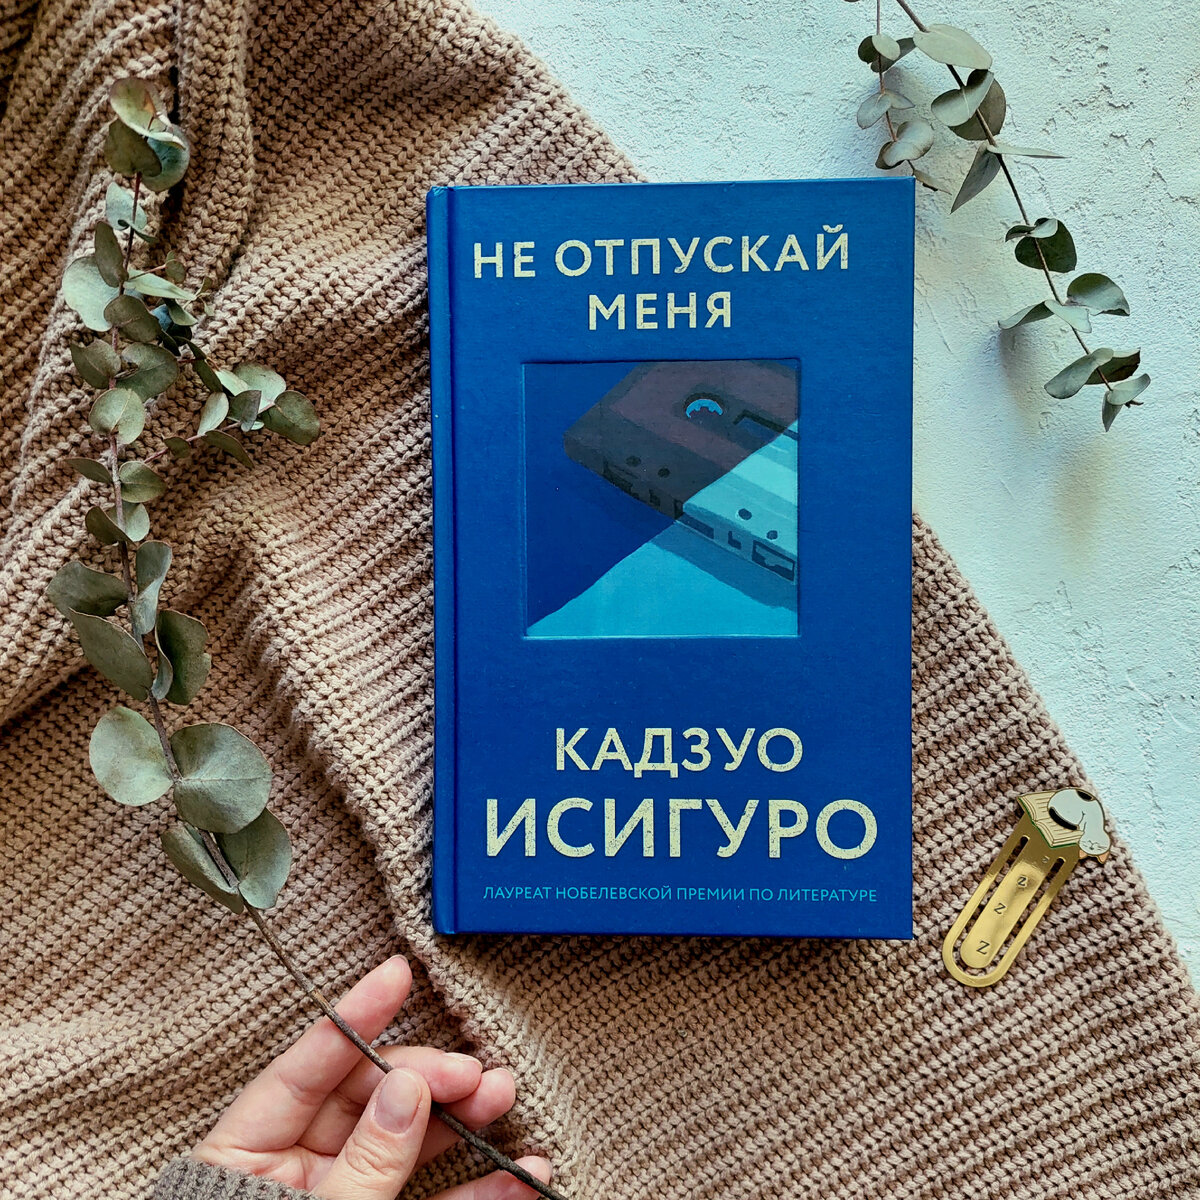 Не отпускай меня книга кадзуо отзывы. Исигуро к. "не отпускай меня". Кадзуо Исигуро не отпускай меня. Не отпускай меня Кадзуо Исигуро книга. Исигуро не отпускай меня украинское издание.